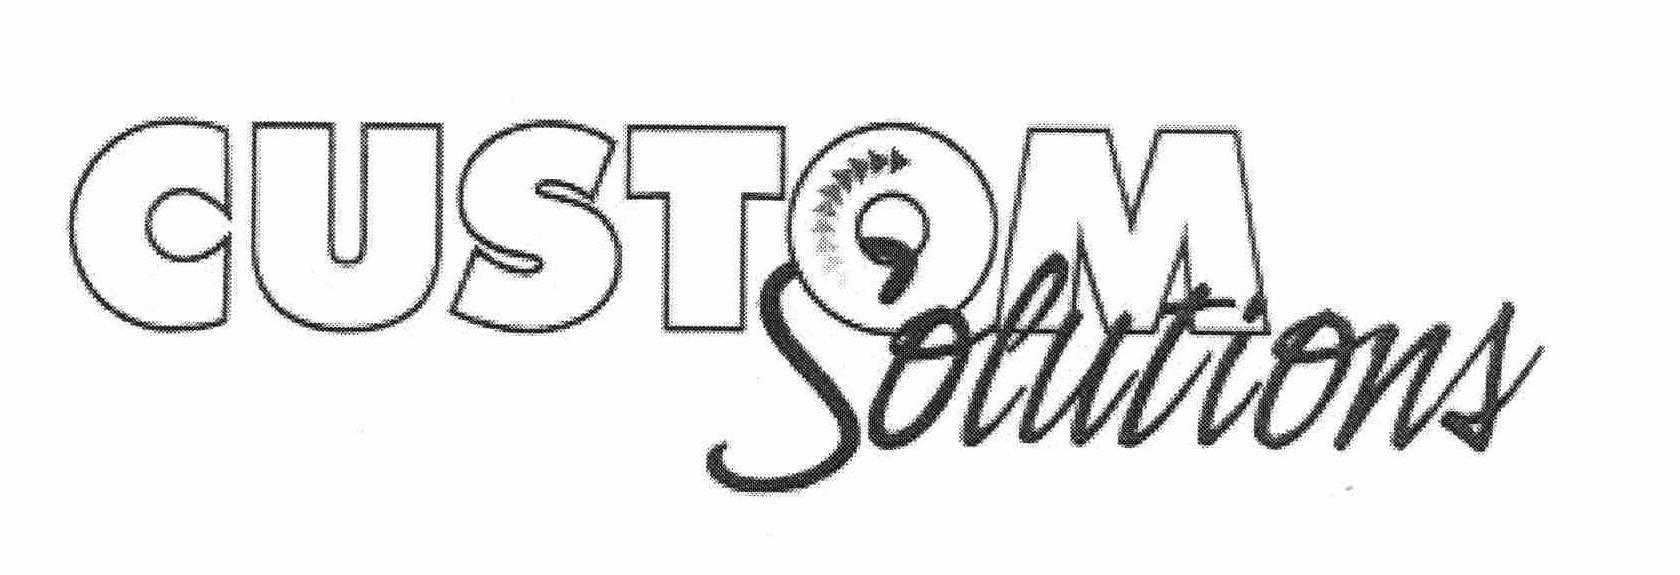 Trademark Logo CUSTOM SOLUTIONS